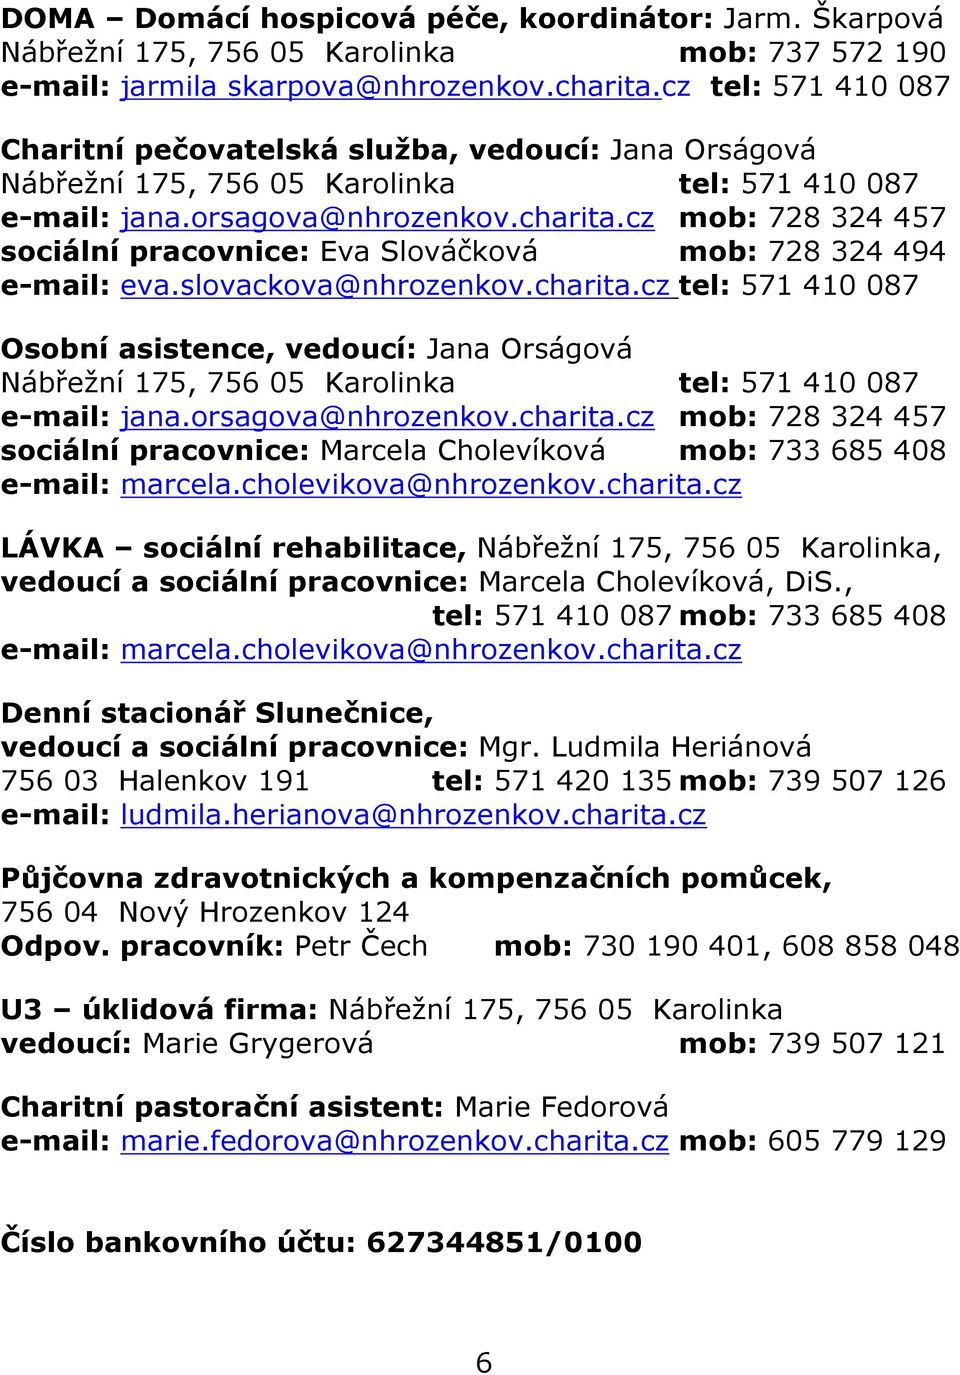 cz mob: 728 324 457 sociální pracovnice: Eva Slováčková mob: 728 324 494 e-mail: eva.slovackova@nhrozenkov.charita.